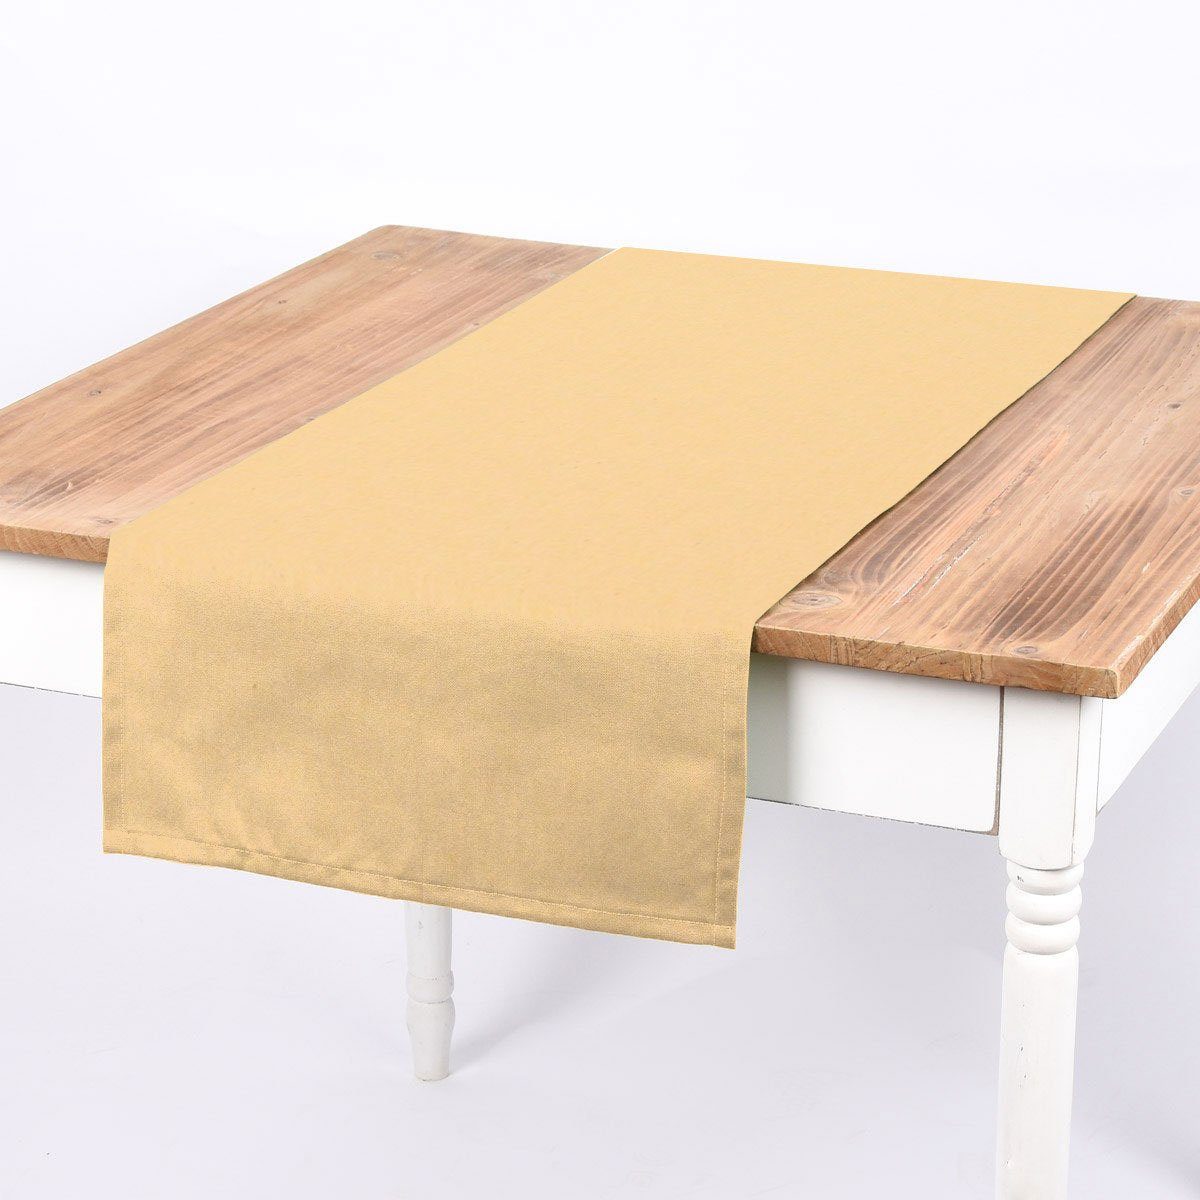 SCHÖNER LEBEN. Tischläufer SCHÖNER LEBEN. Tischläufer Leinenlook uni pastell gelb 40x160cm, handmade